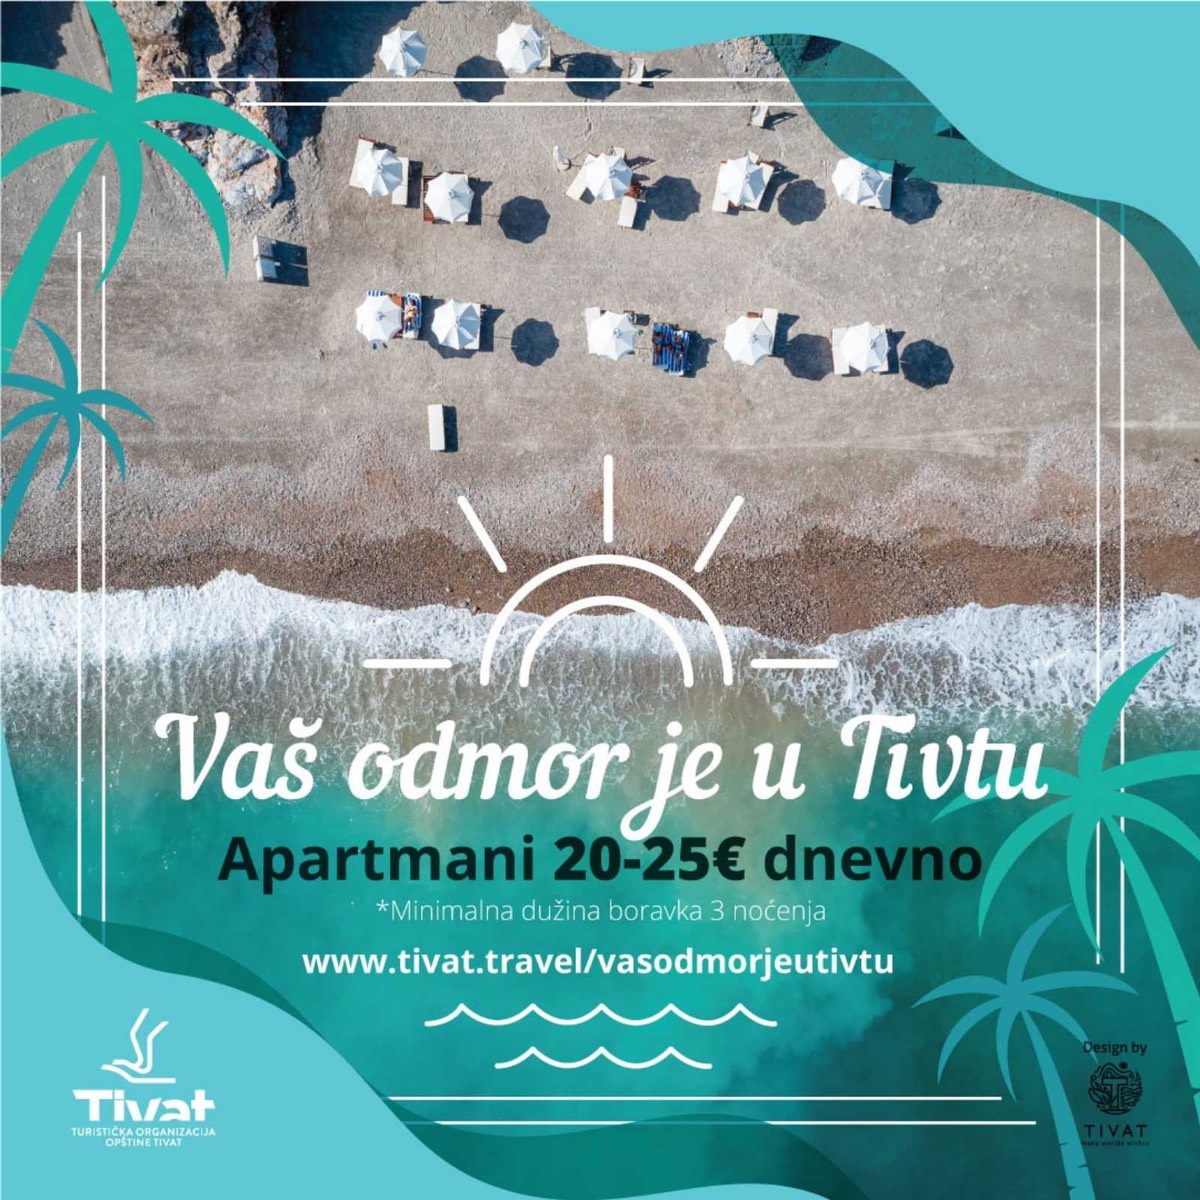 Počela kampanja “Vaš odmor je u Tivtu”